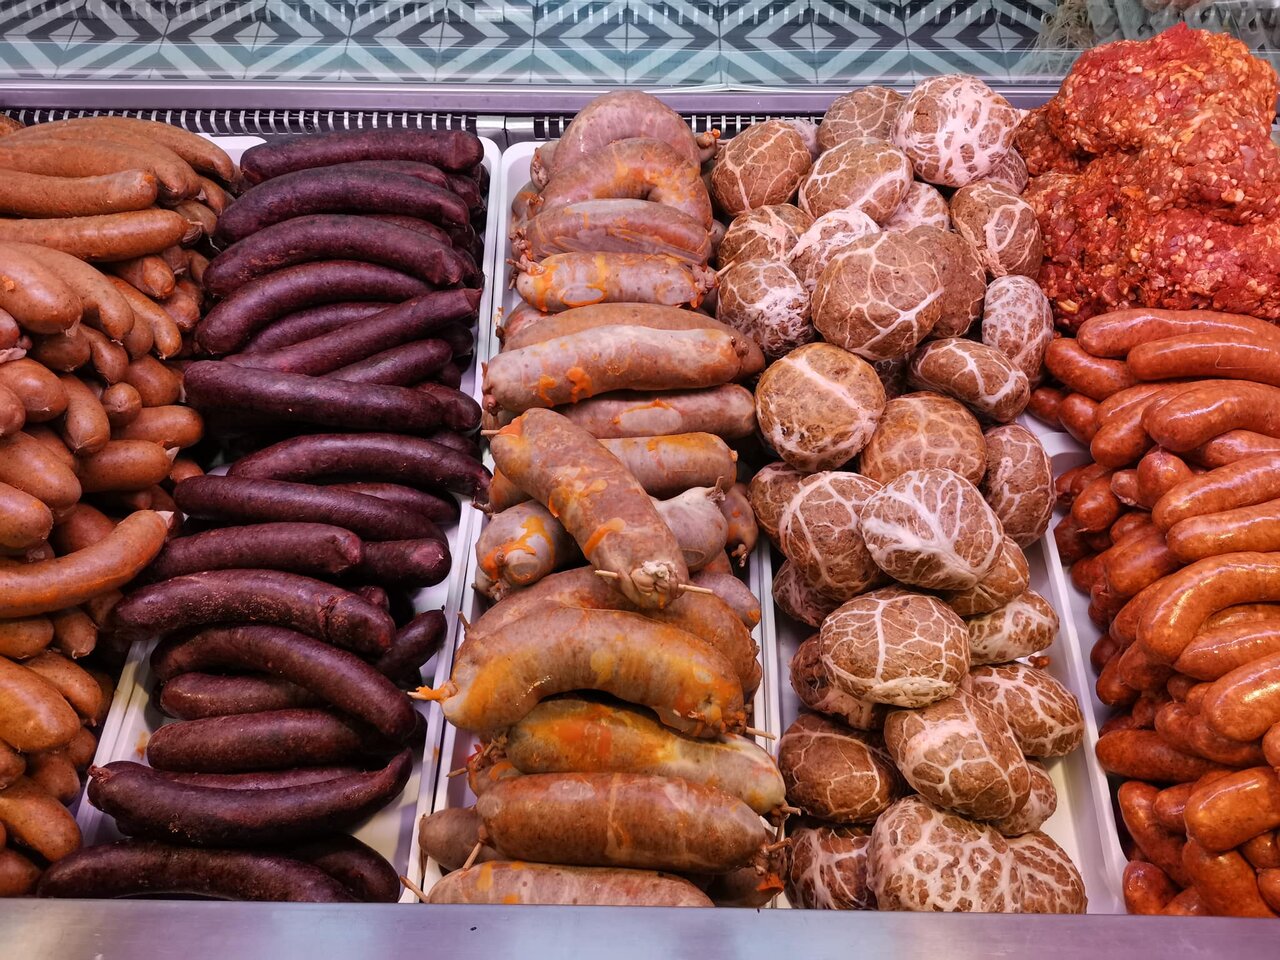 المجر ، المجرية ، اللحوم ، سوق اللحوم ، المحلية ، منتجات اللحوم